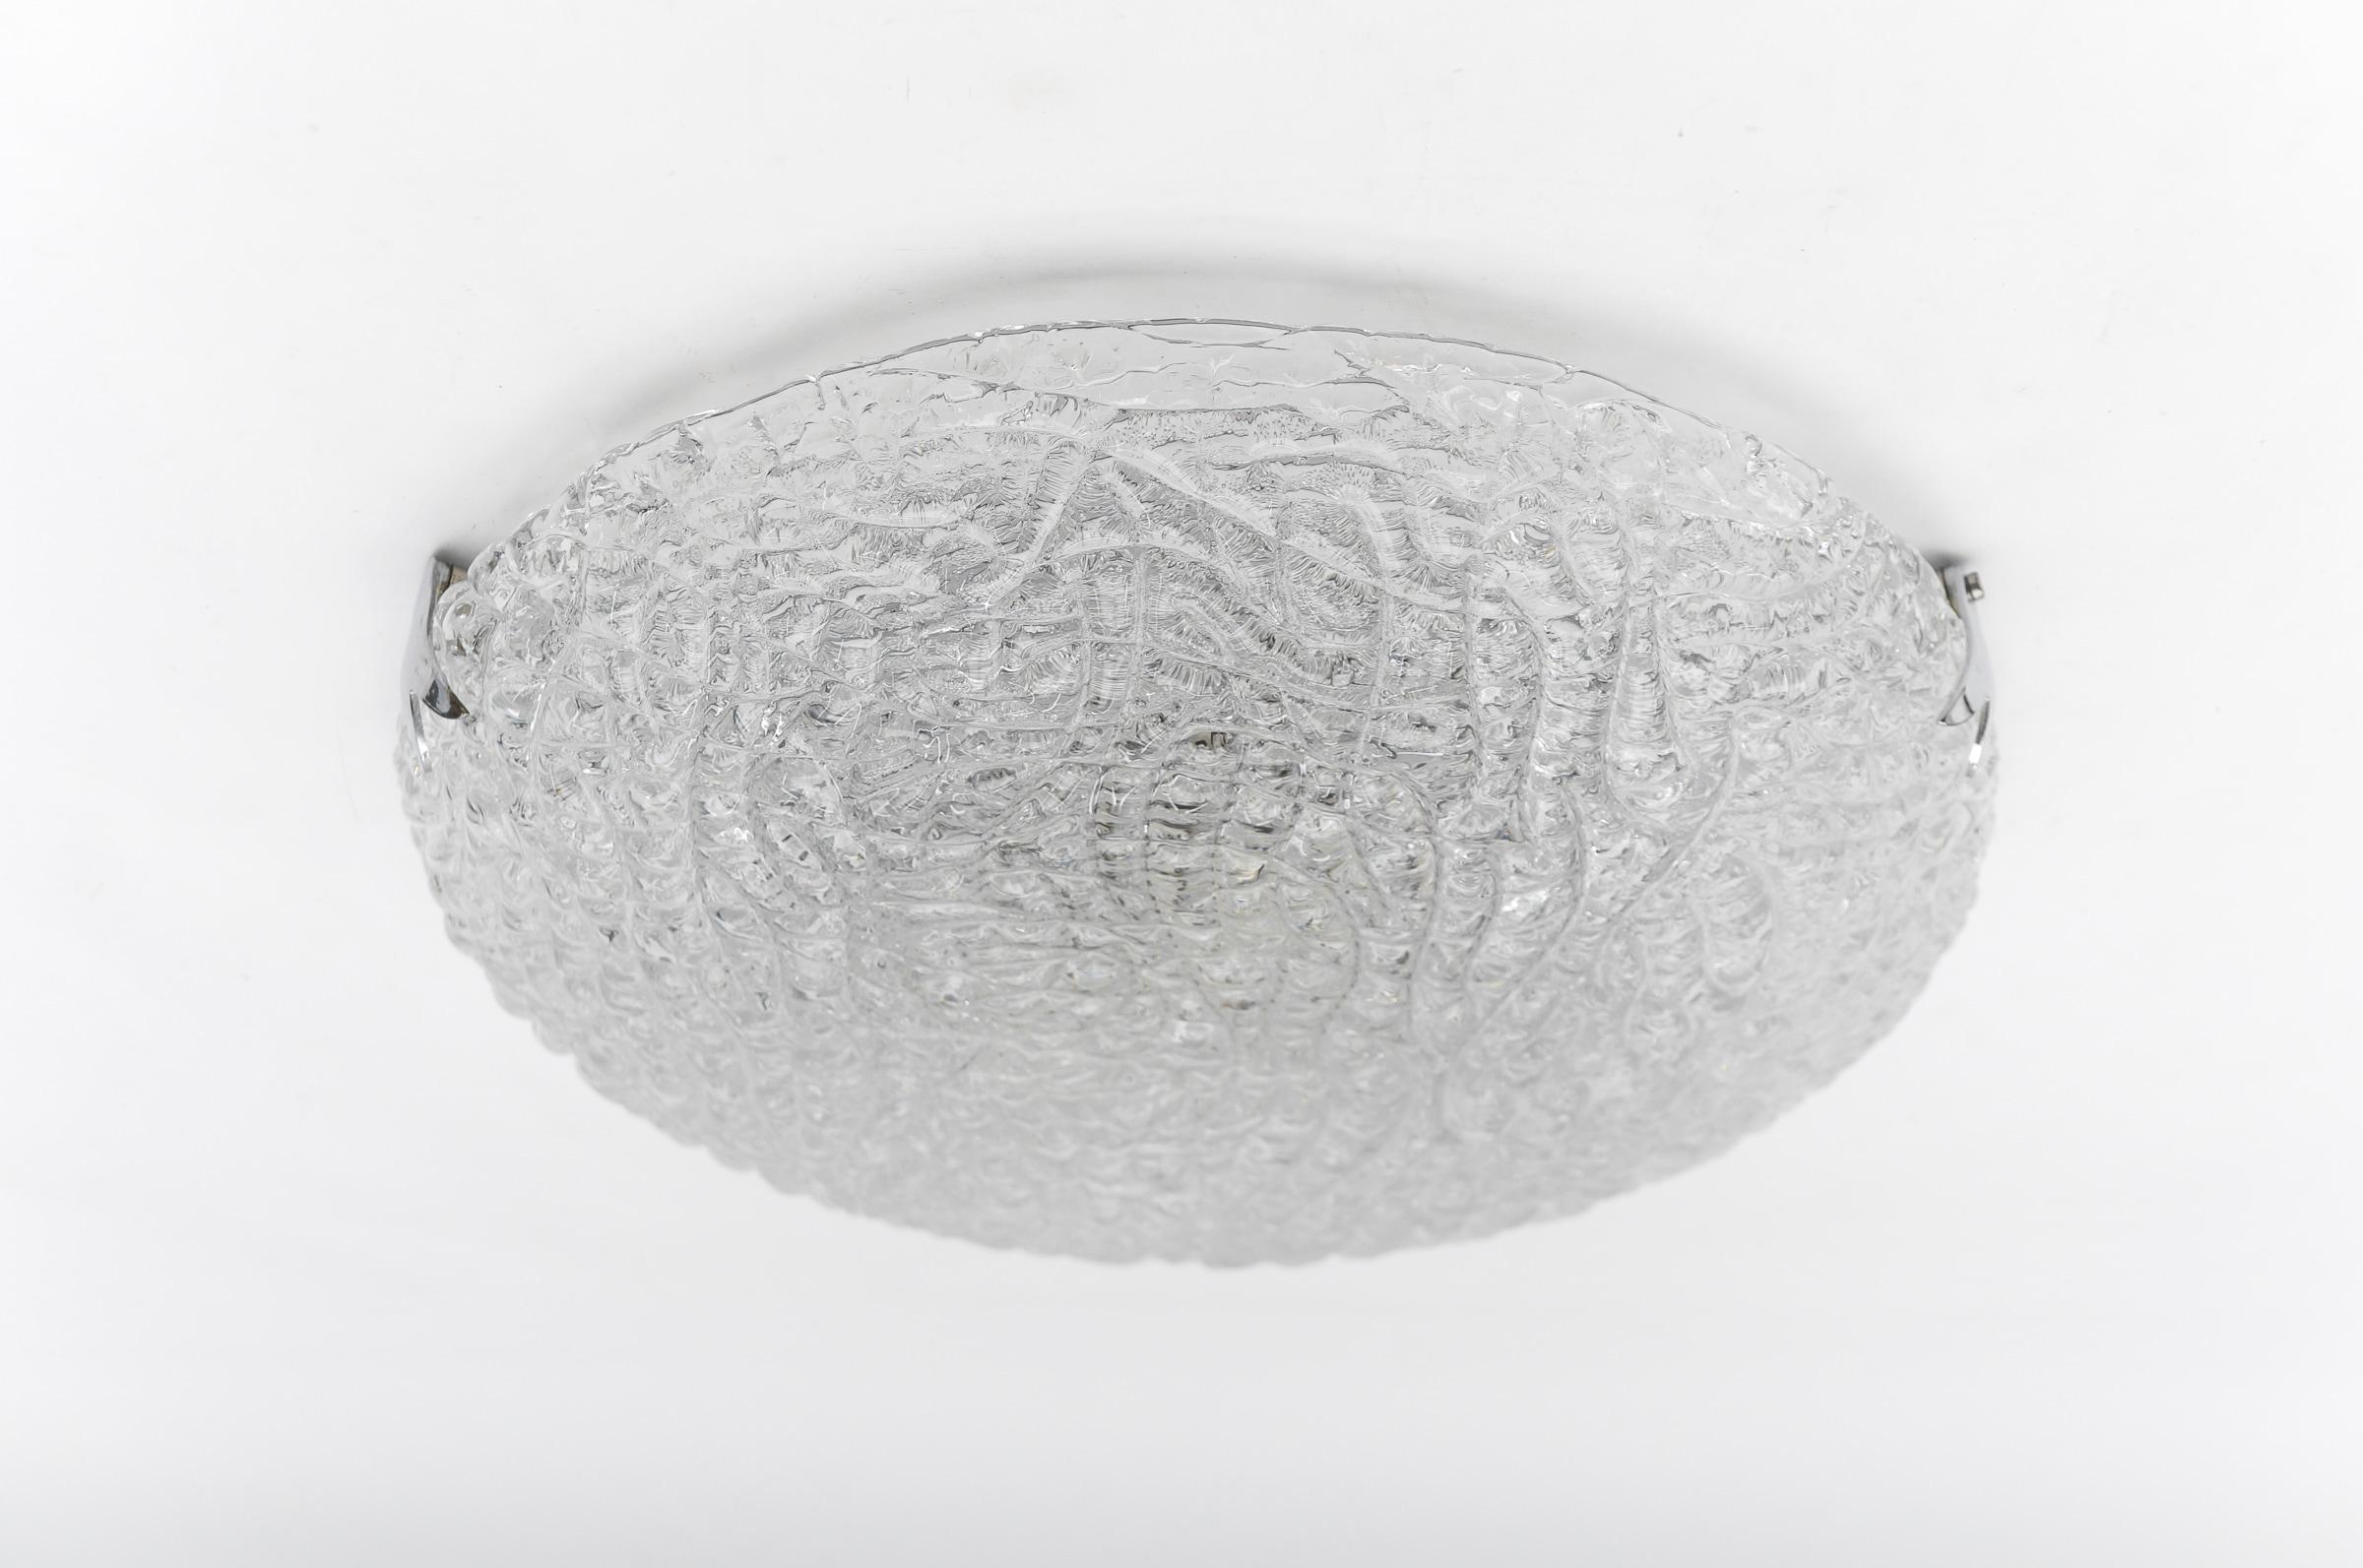 Hübsche Eisglashalterung von Kaiser Leuchten, 1960er Jahre Deutschland.

Dimension
Höhe: 11 cm (4,33 Zoll)
Dameter: 16,53 Zoll (42 cm)

Jede Lampe kommt mit 3 x E27 / E26 Edison Schraube passen Glühbirnenfassung, ist verkabelt und in